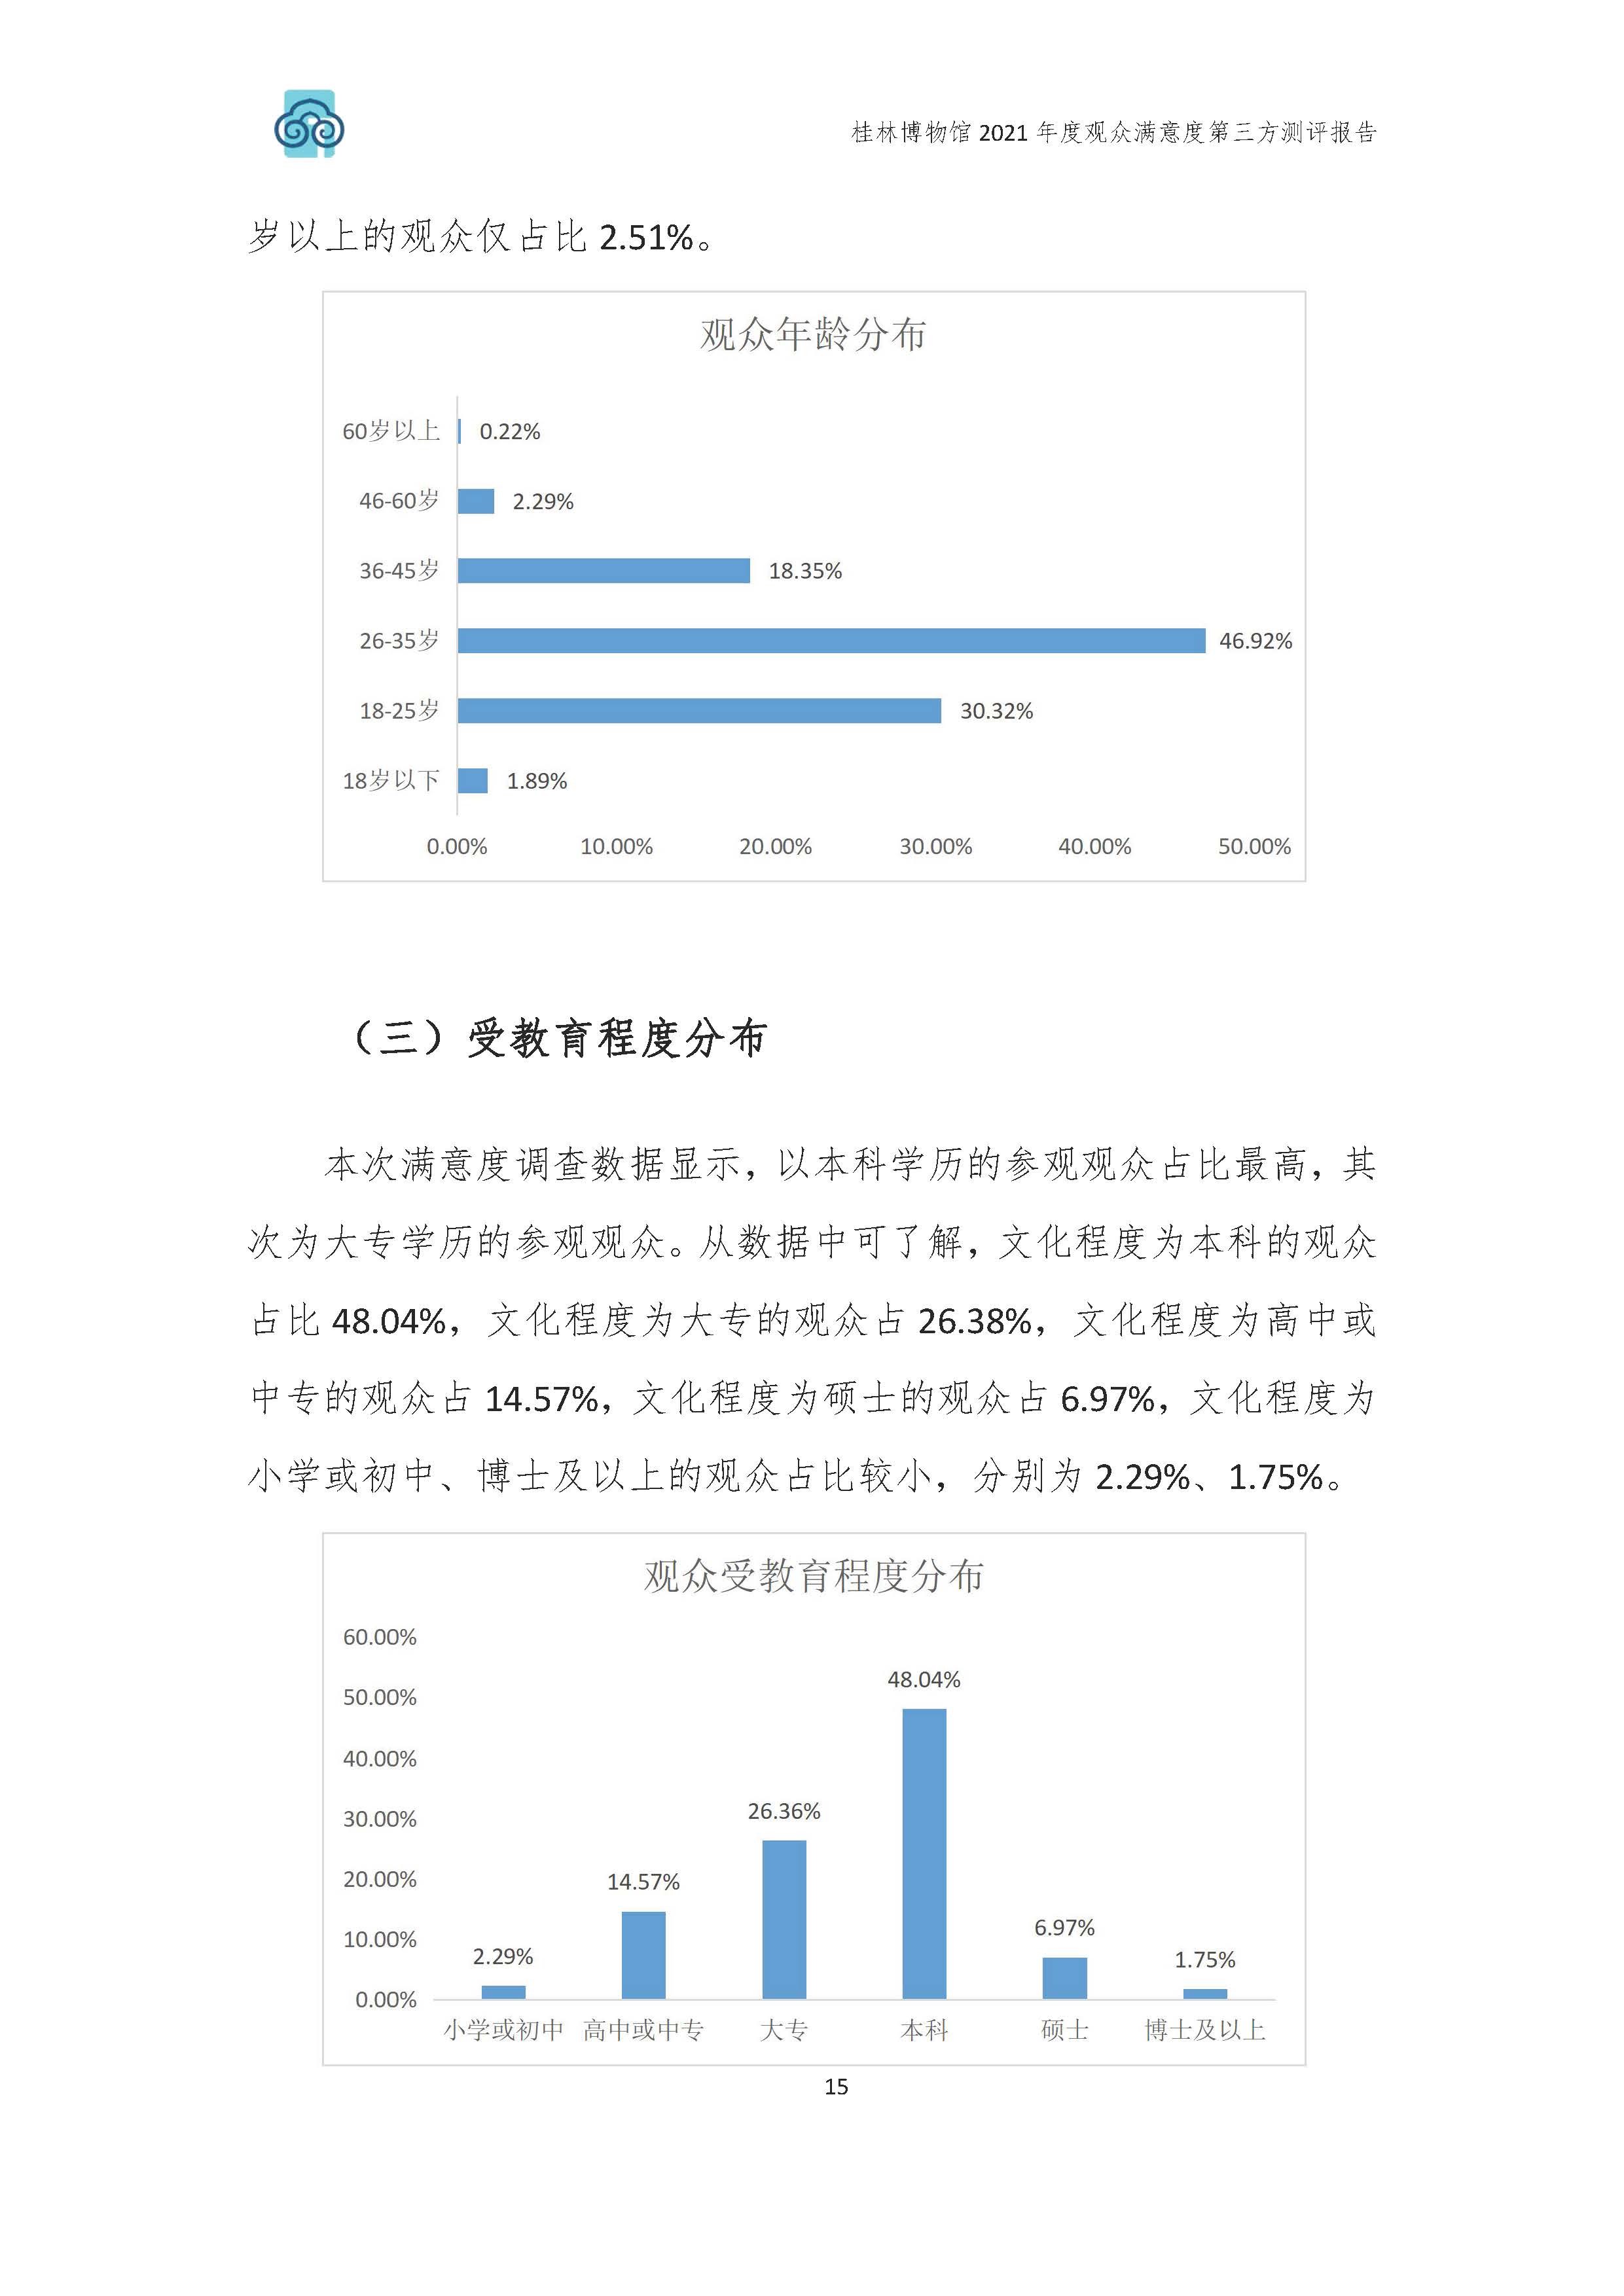 2021年桂林博物馆参观观众满意度调查报告_v3_页面_18.jpg